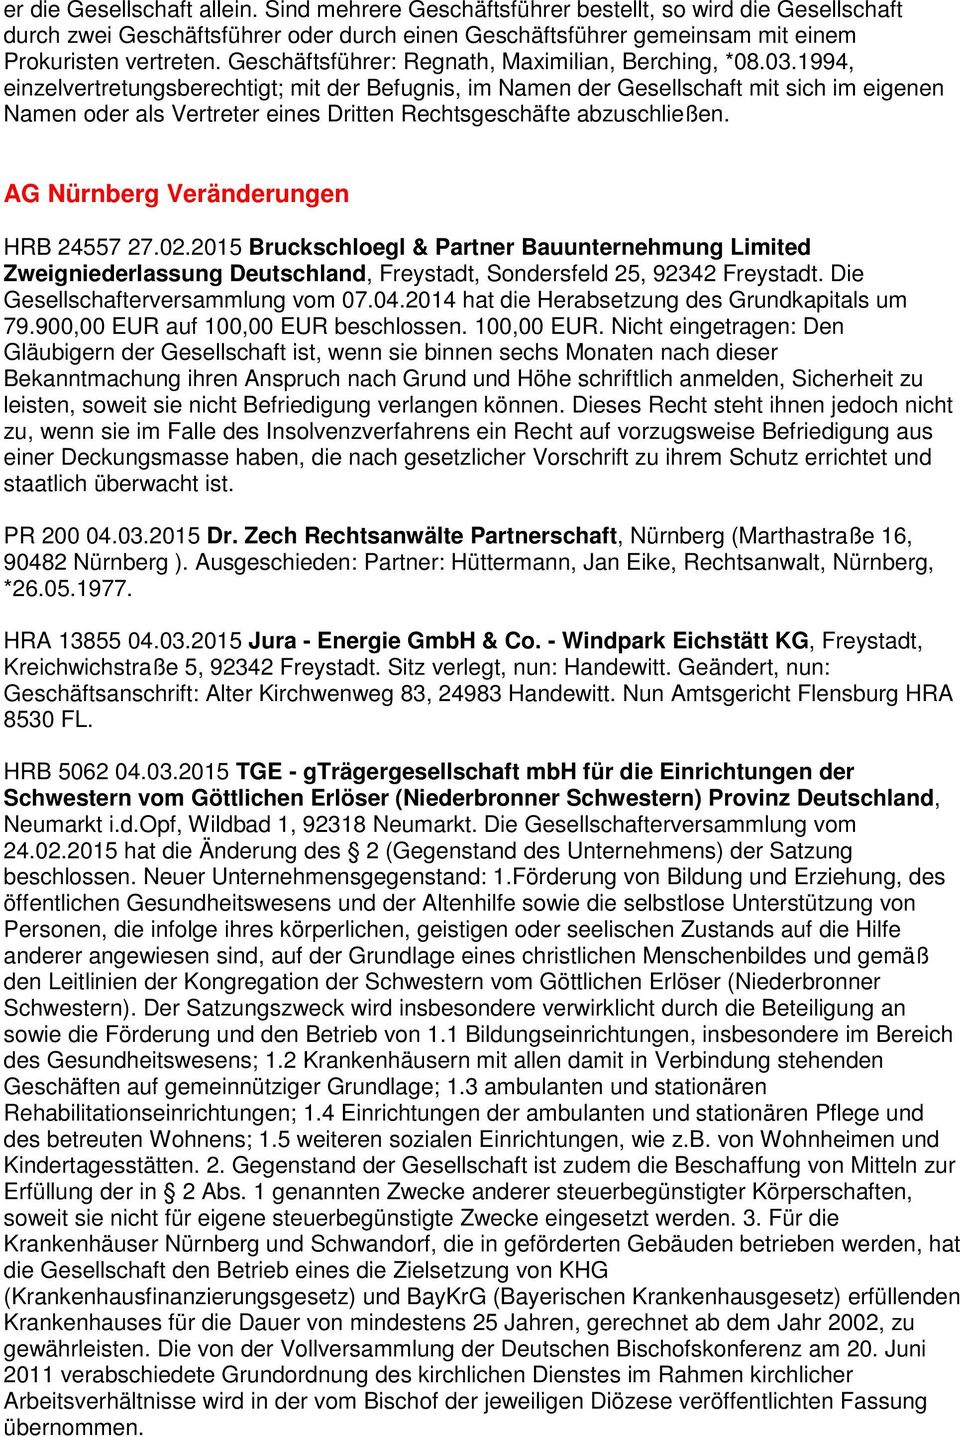 2015 Bruckschloegl & Partner Bauunternehmung Limited Zweigniederlassung Deutschland, Freystadt, Sondersfeld 25, 92342 Freystadt. Die Gesellschafterversammlung vom 07.04.